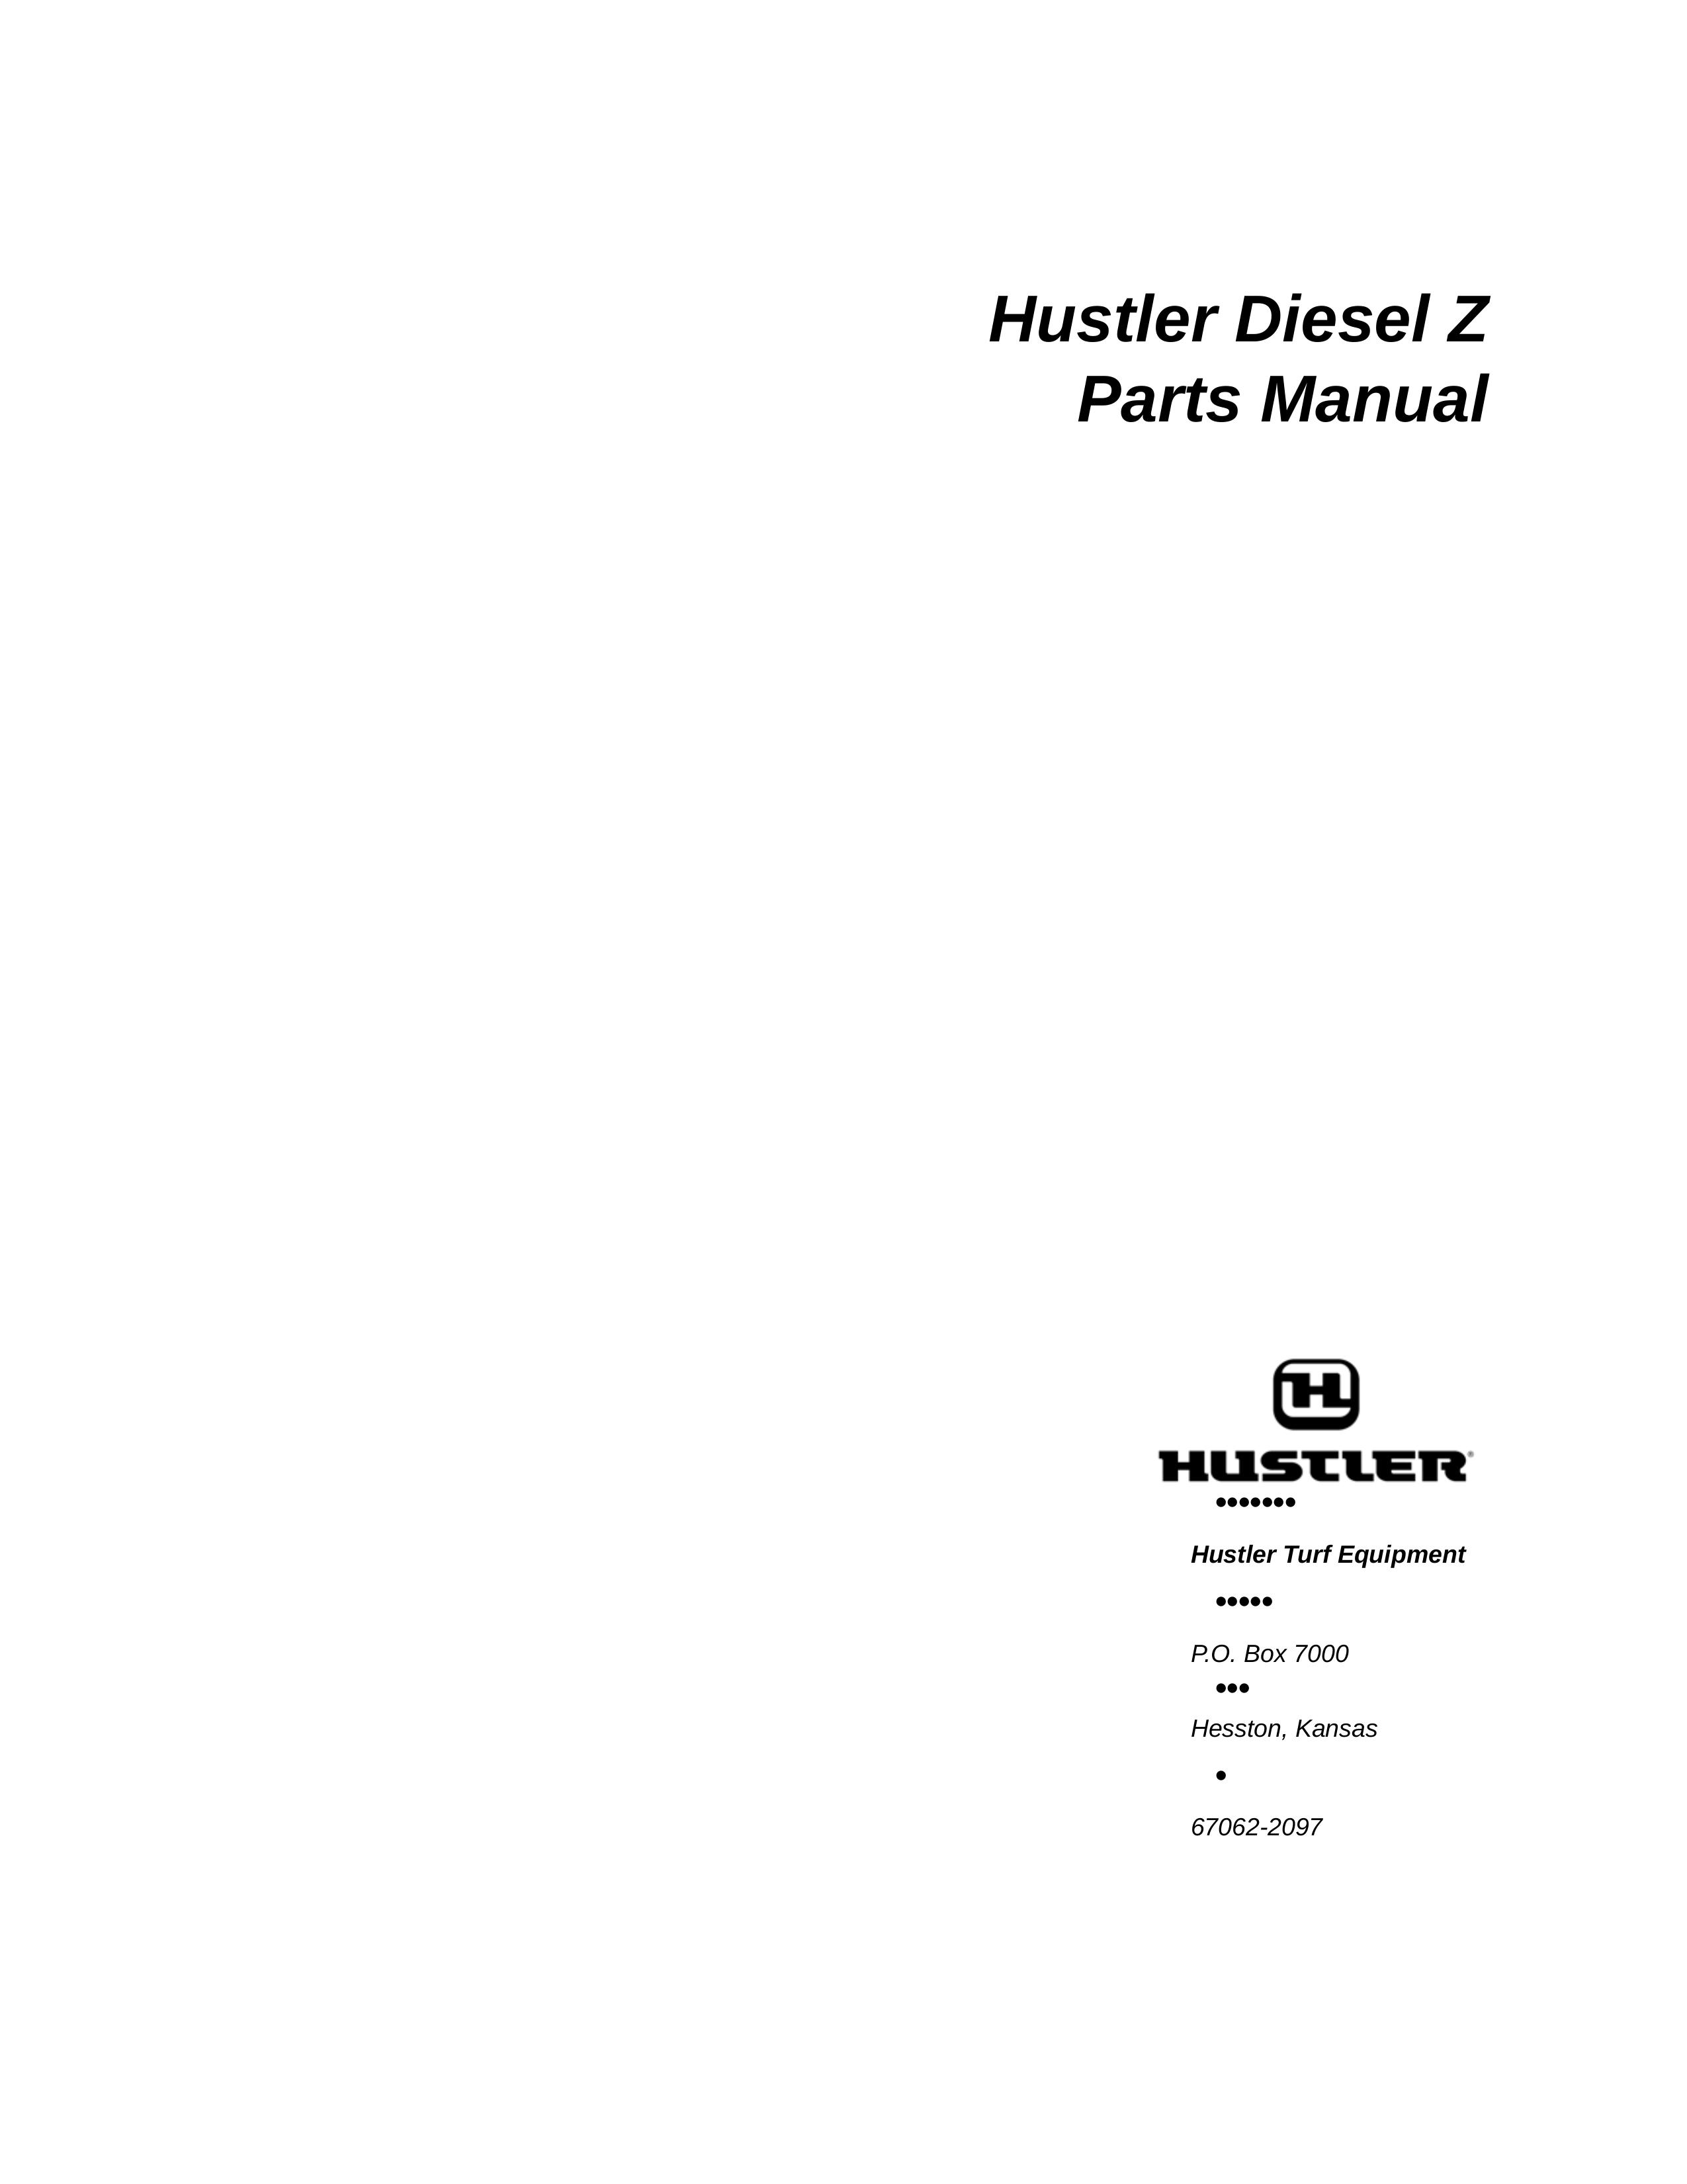 Hustler Turf Diesel Z Lawn Mower User Manual